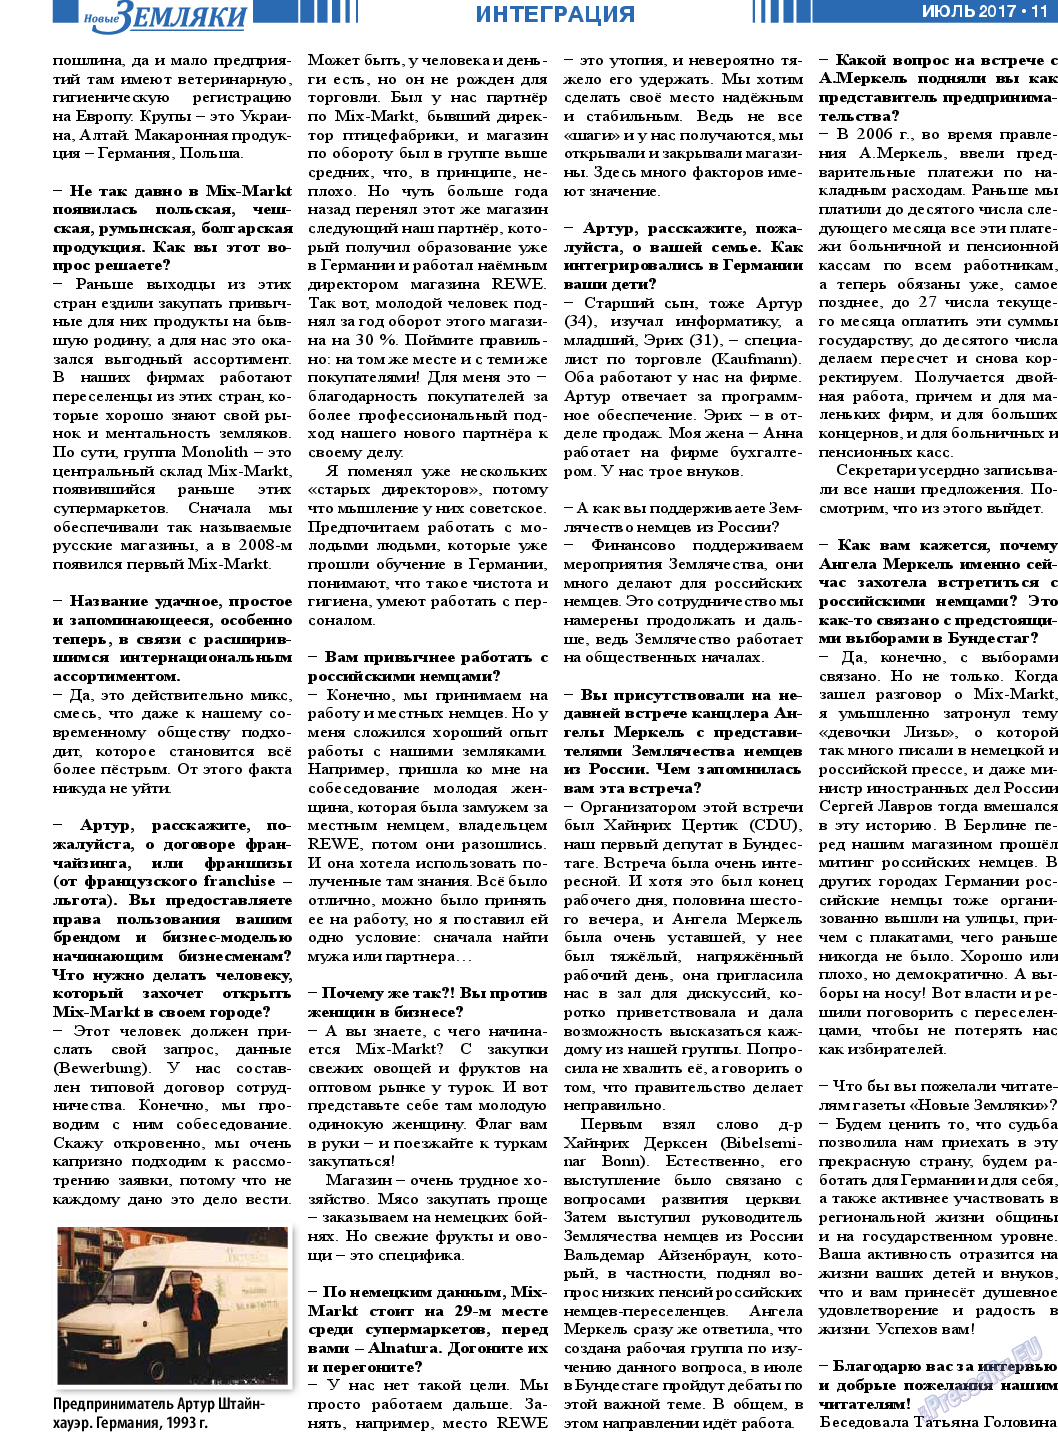 Новые Земляки, газета. 2017 №7 стр.11